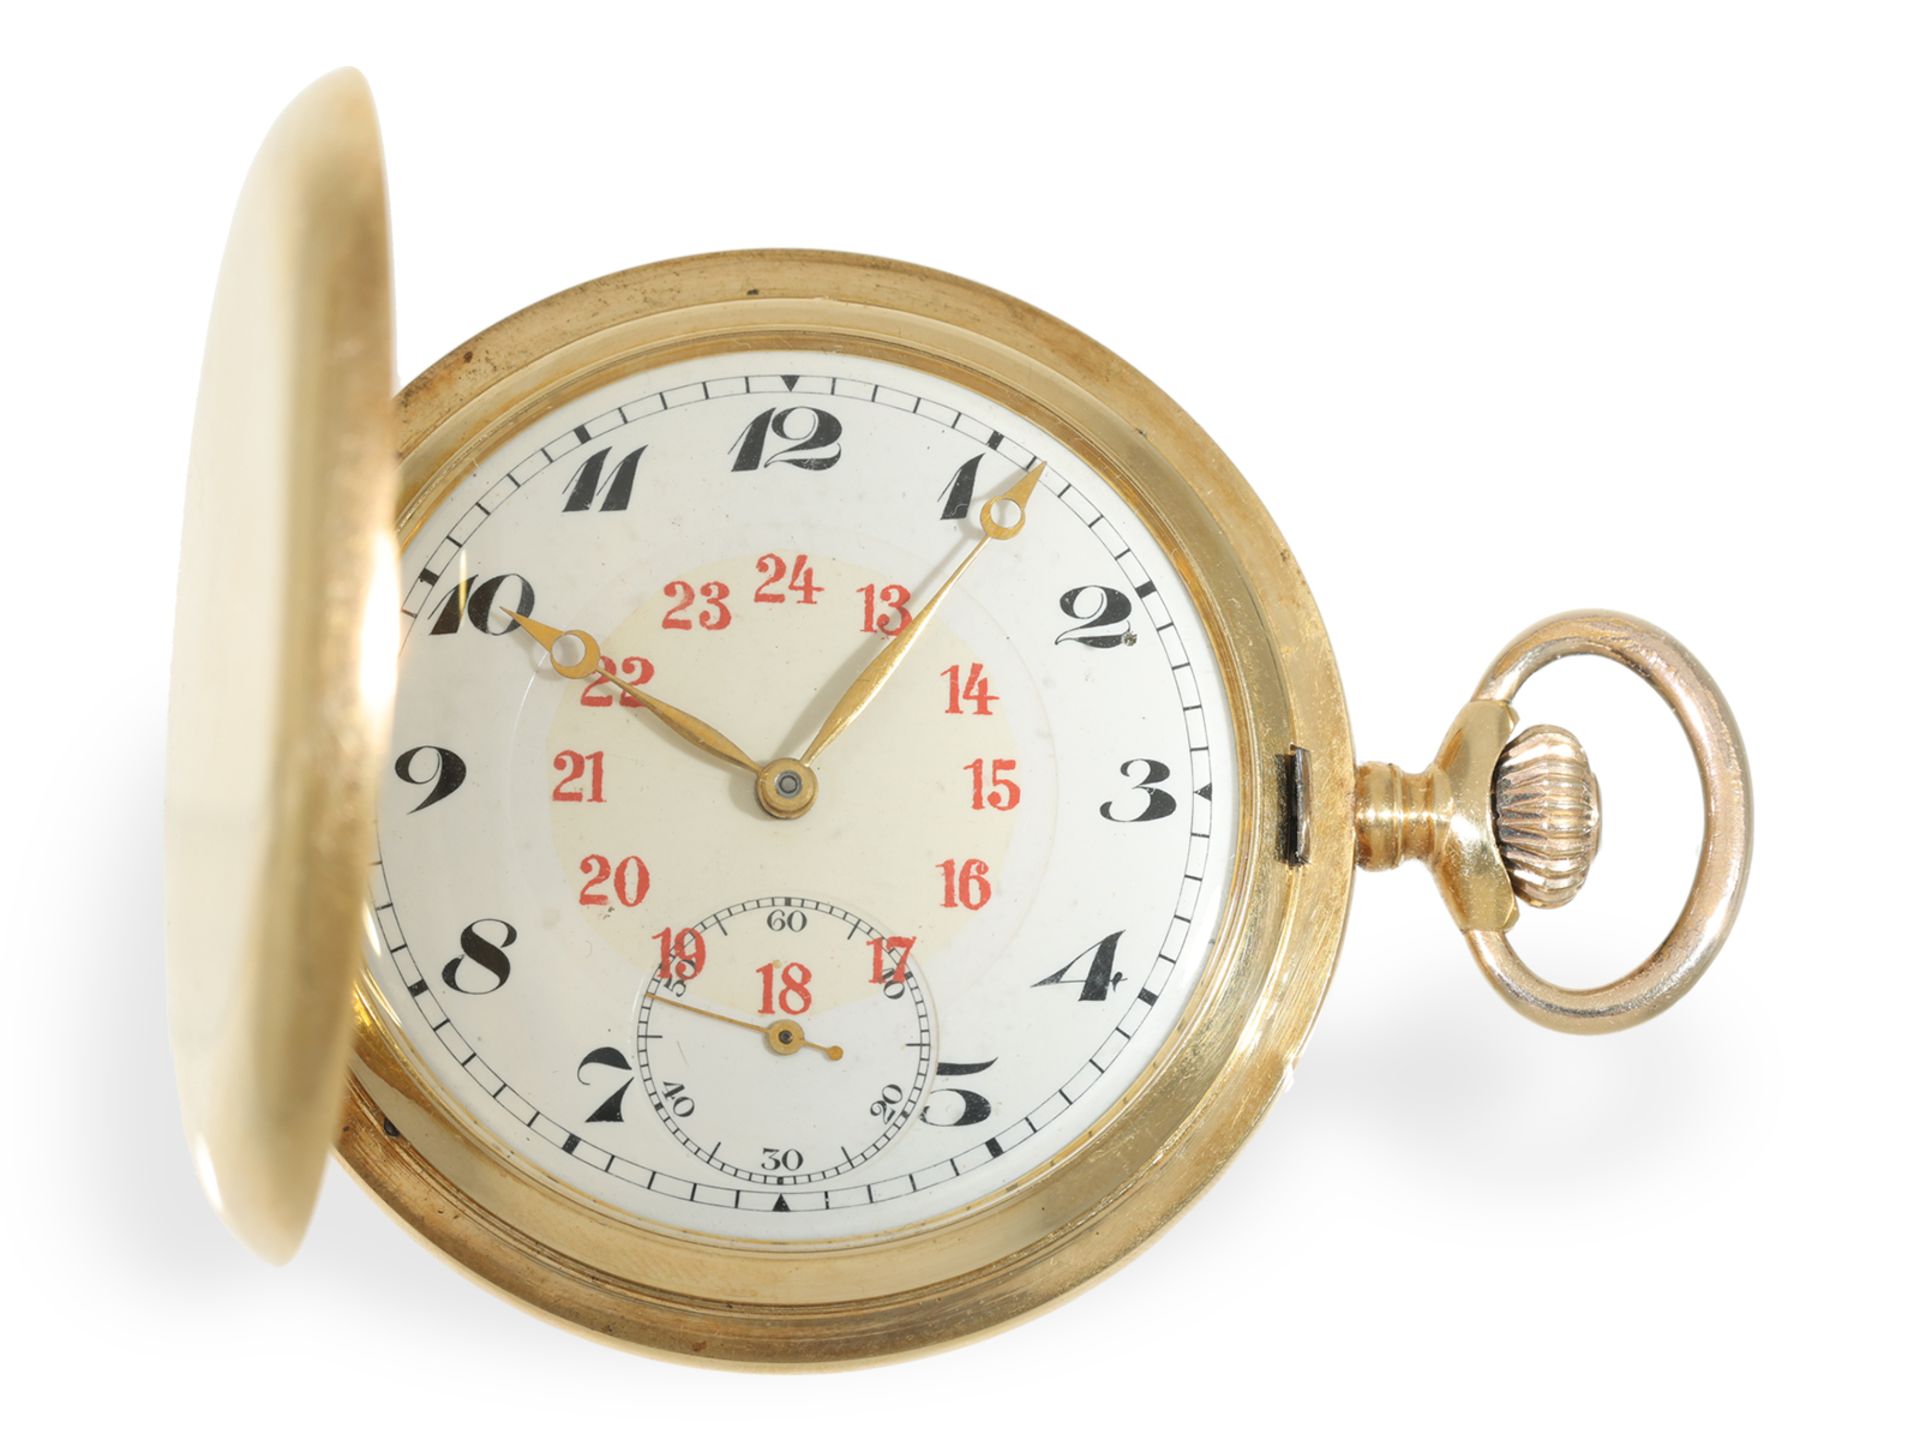 Taschenuhr: feine Goldsavonnette mit Präzisionswerk und goldener Uhrenkette, Record Watch um 1920 - Bild 2 aus 8